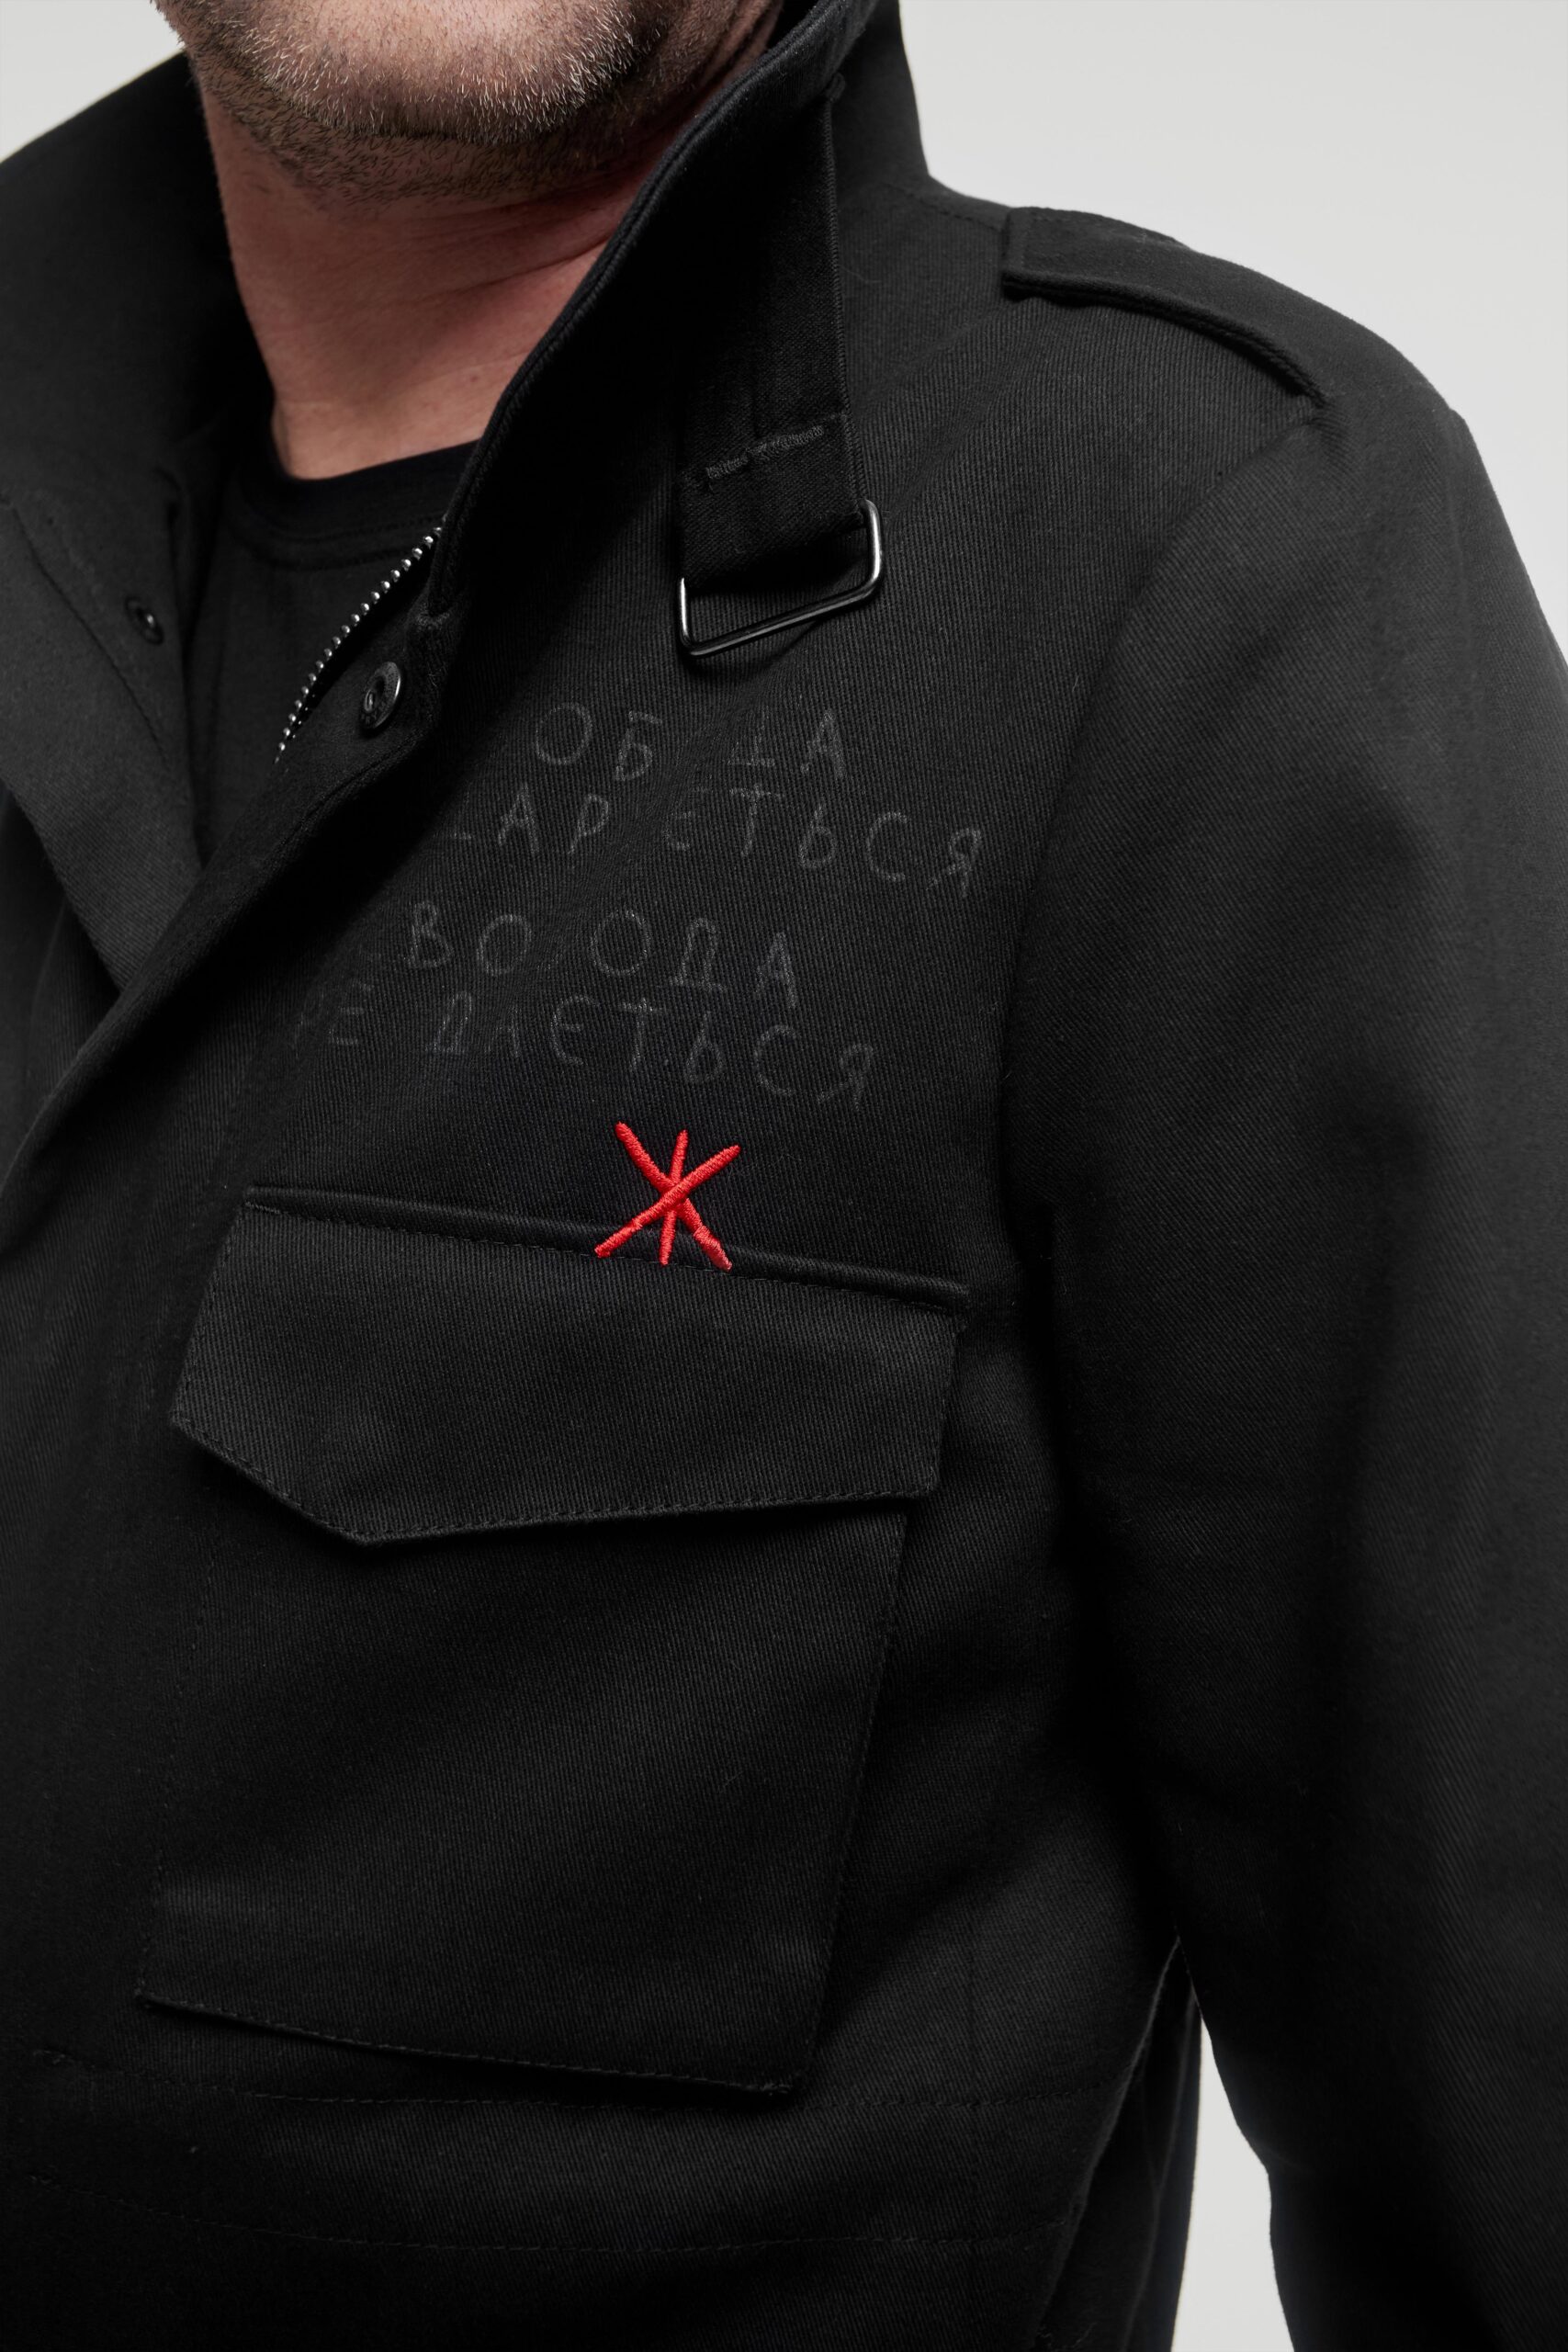 Чоловіча Куртка М-65 Свобода. Колір чорний.  Основний матеріал: 100% бавовна
Матеріал підкладки: 60 % бавовна , 40 % поліестер
Технологія нанесення зображень: шовкодрук.